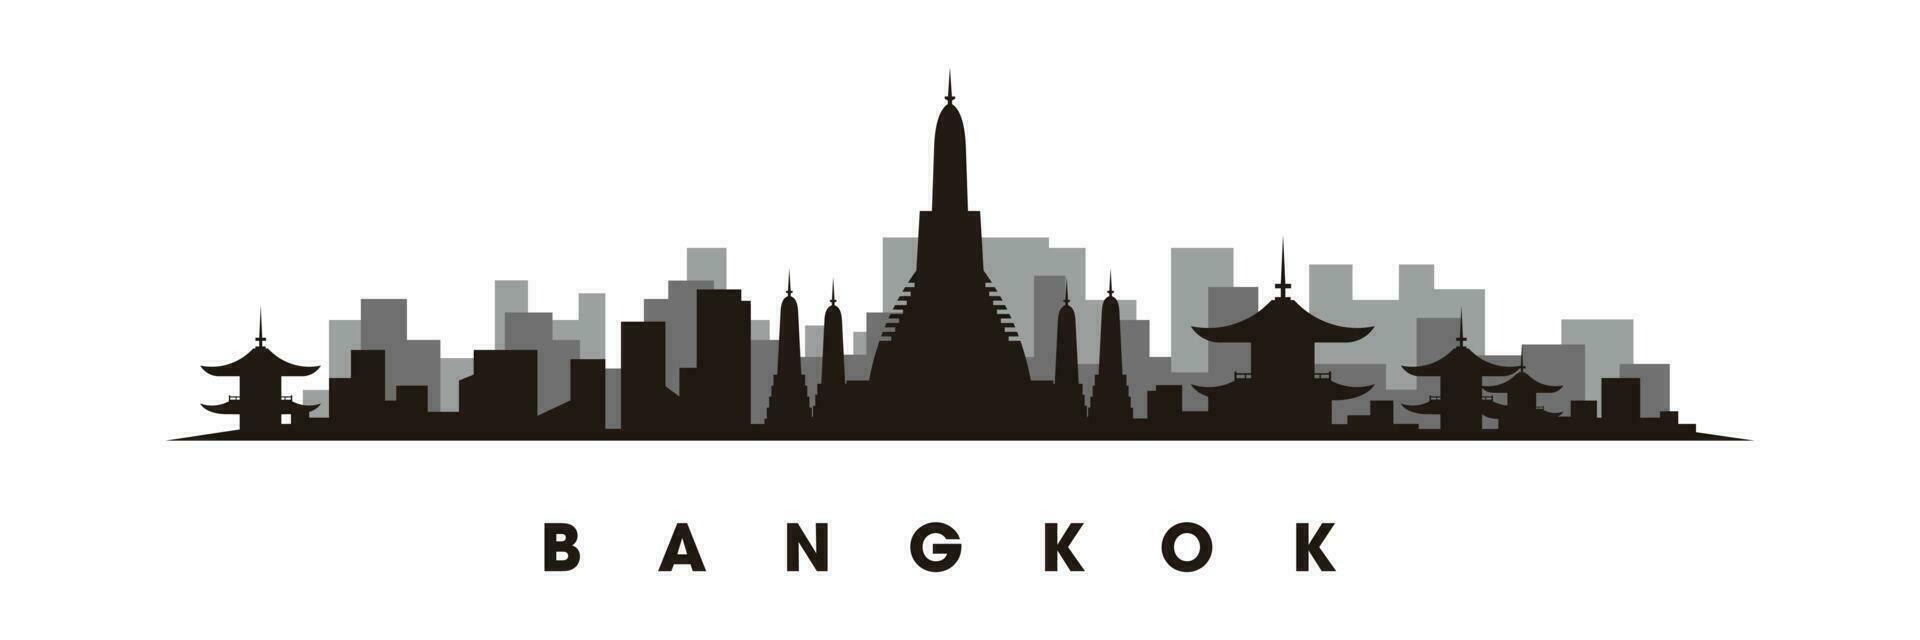 Bangkok skyline and landmarks silhouette vector